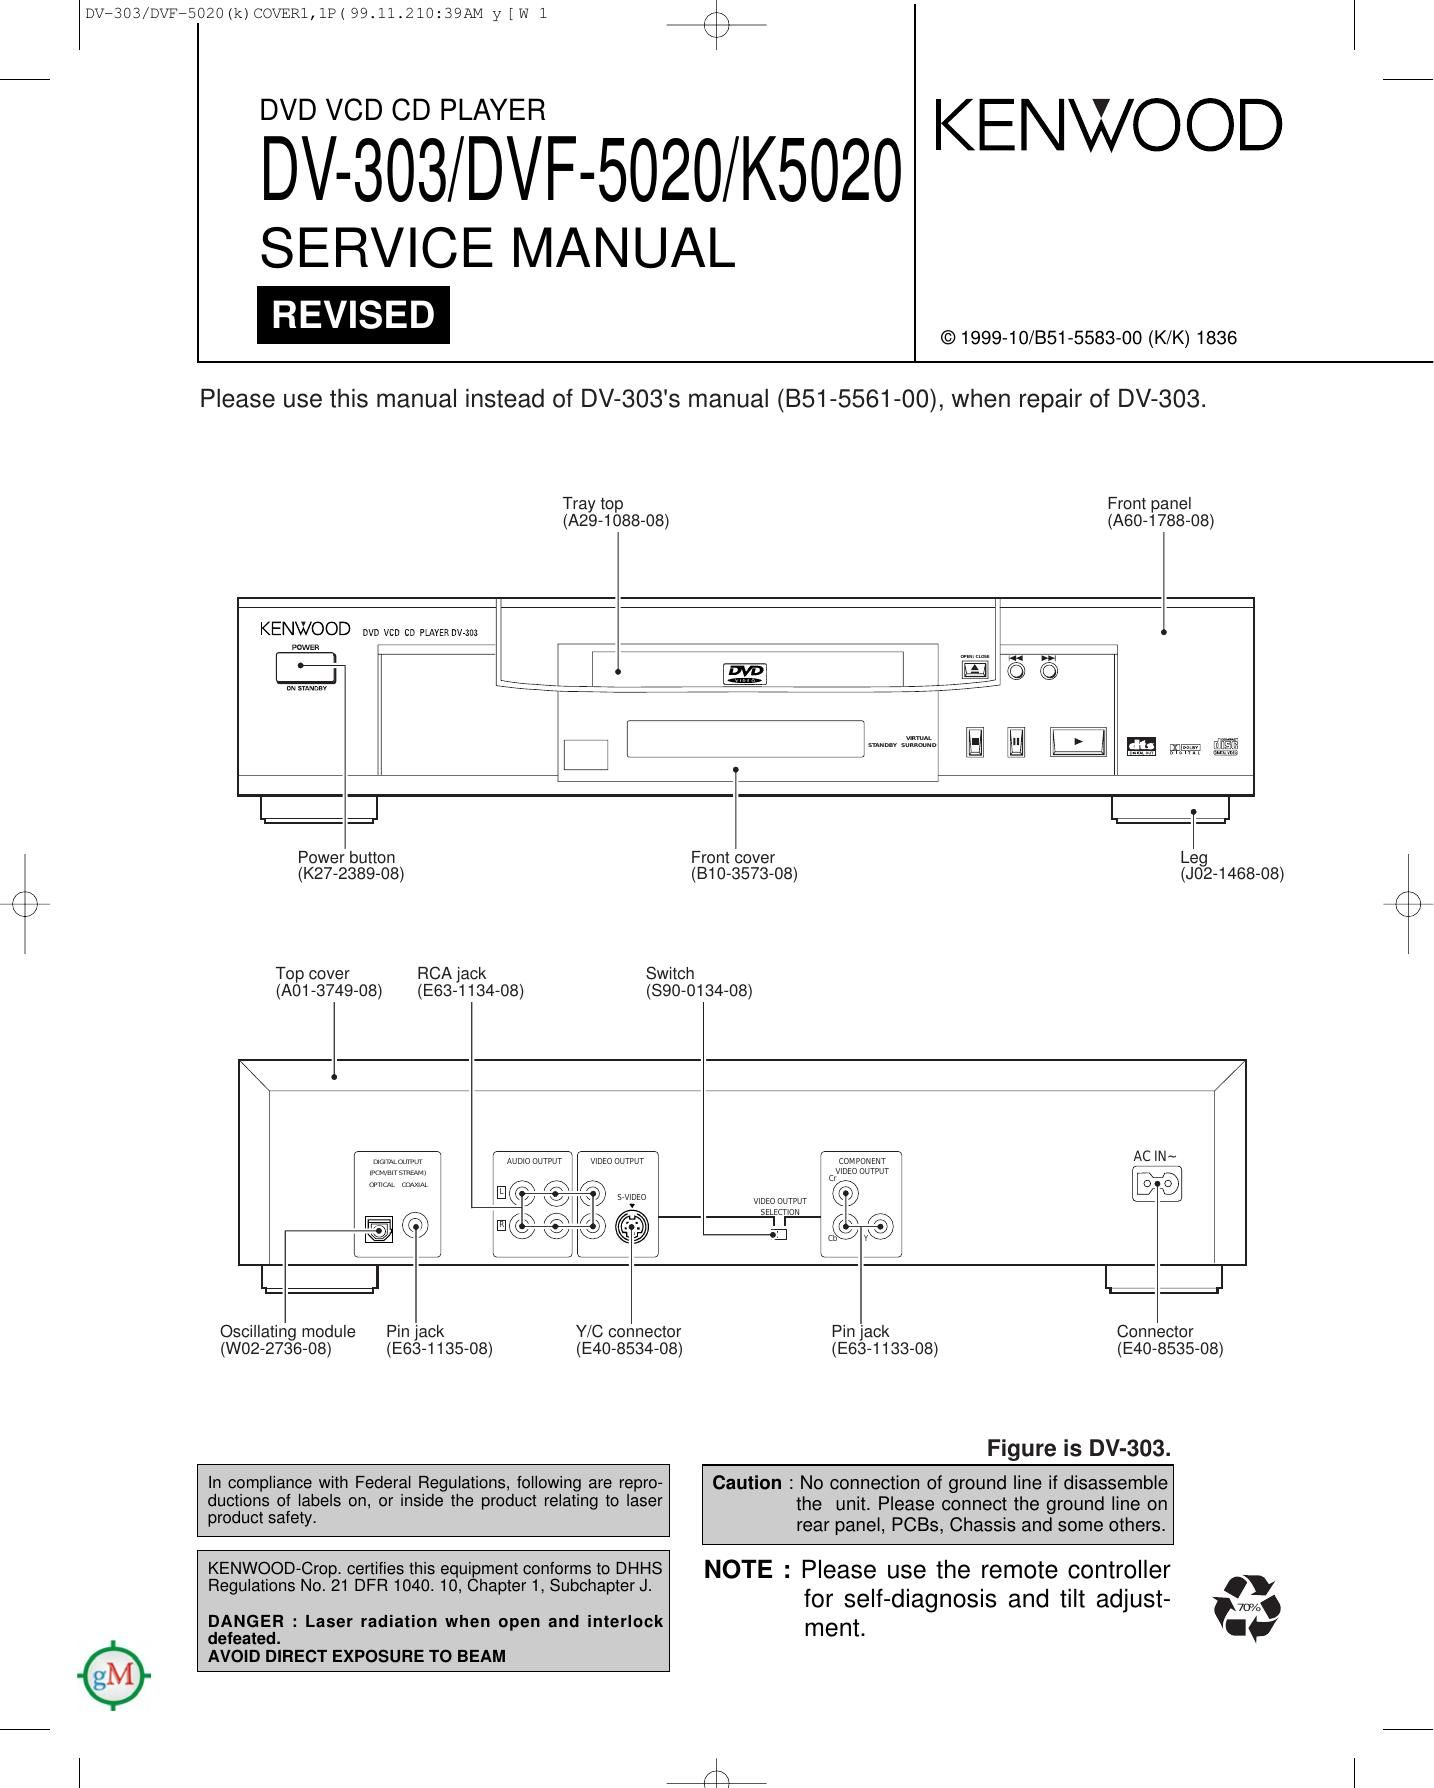 Kenwood DV 303 Service Manual